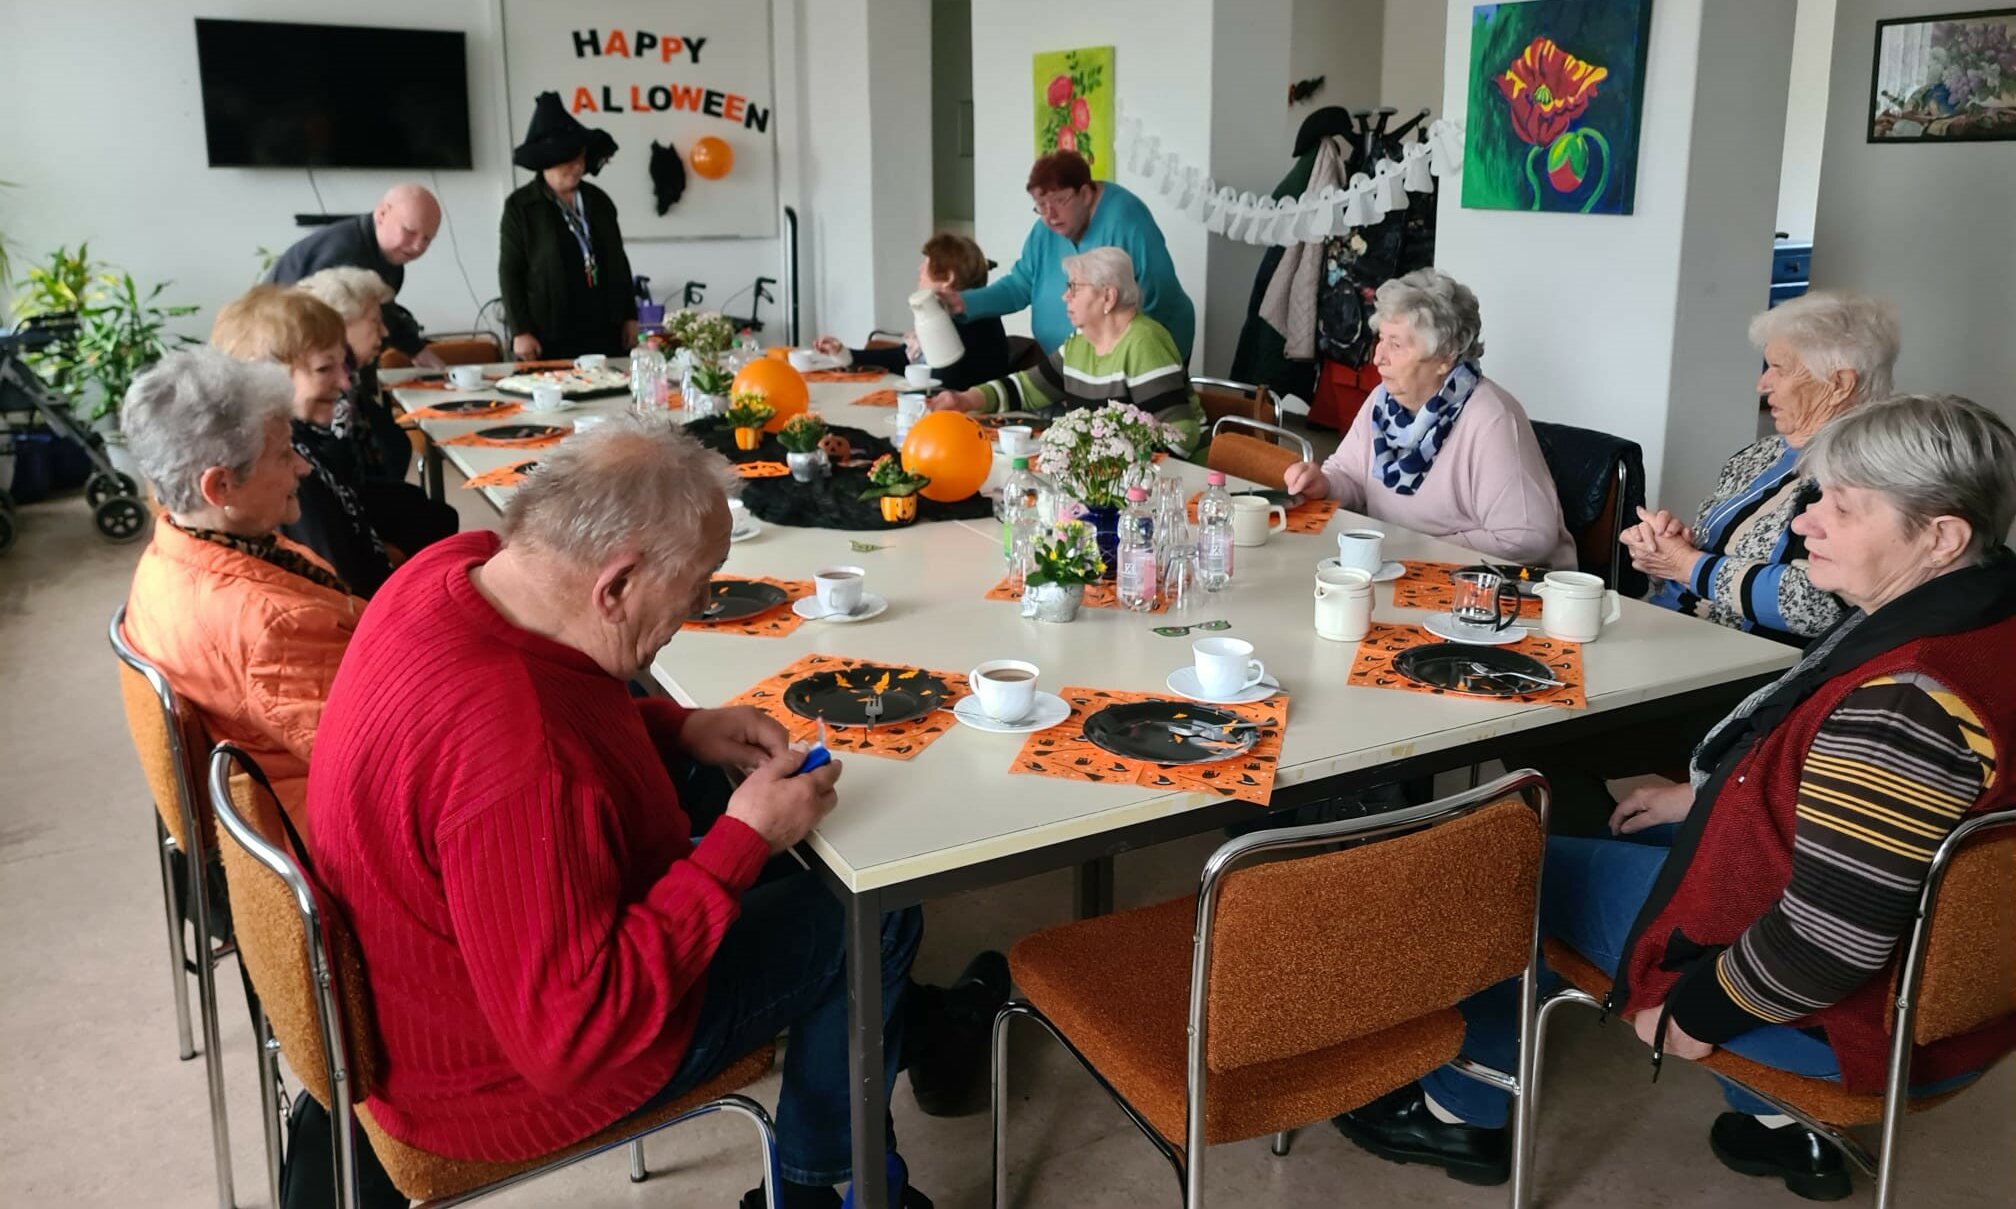 Eine Gruppe älterer Menschen sitzt an einem Tisch. Der Raum ist für Helloween dekoriert.  